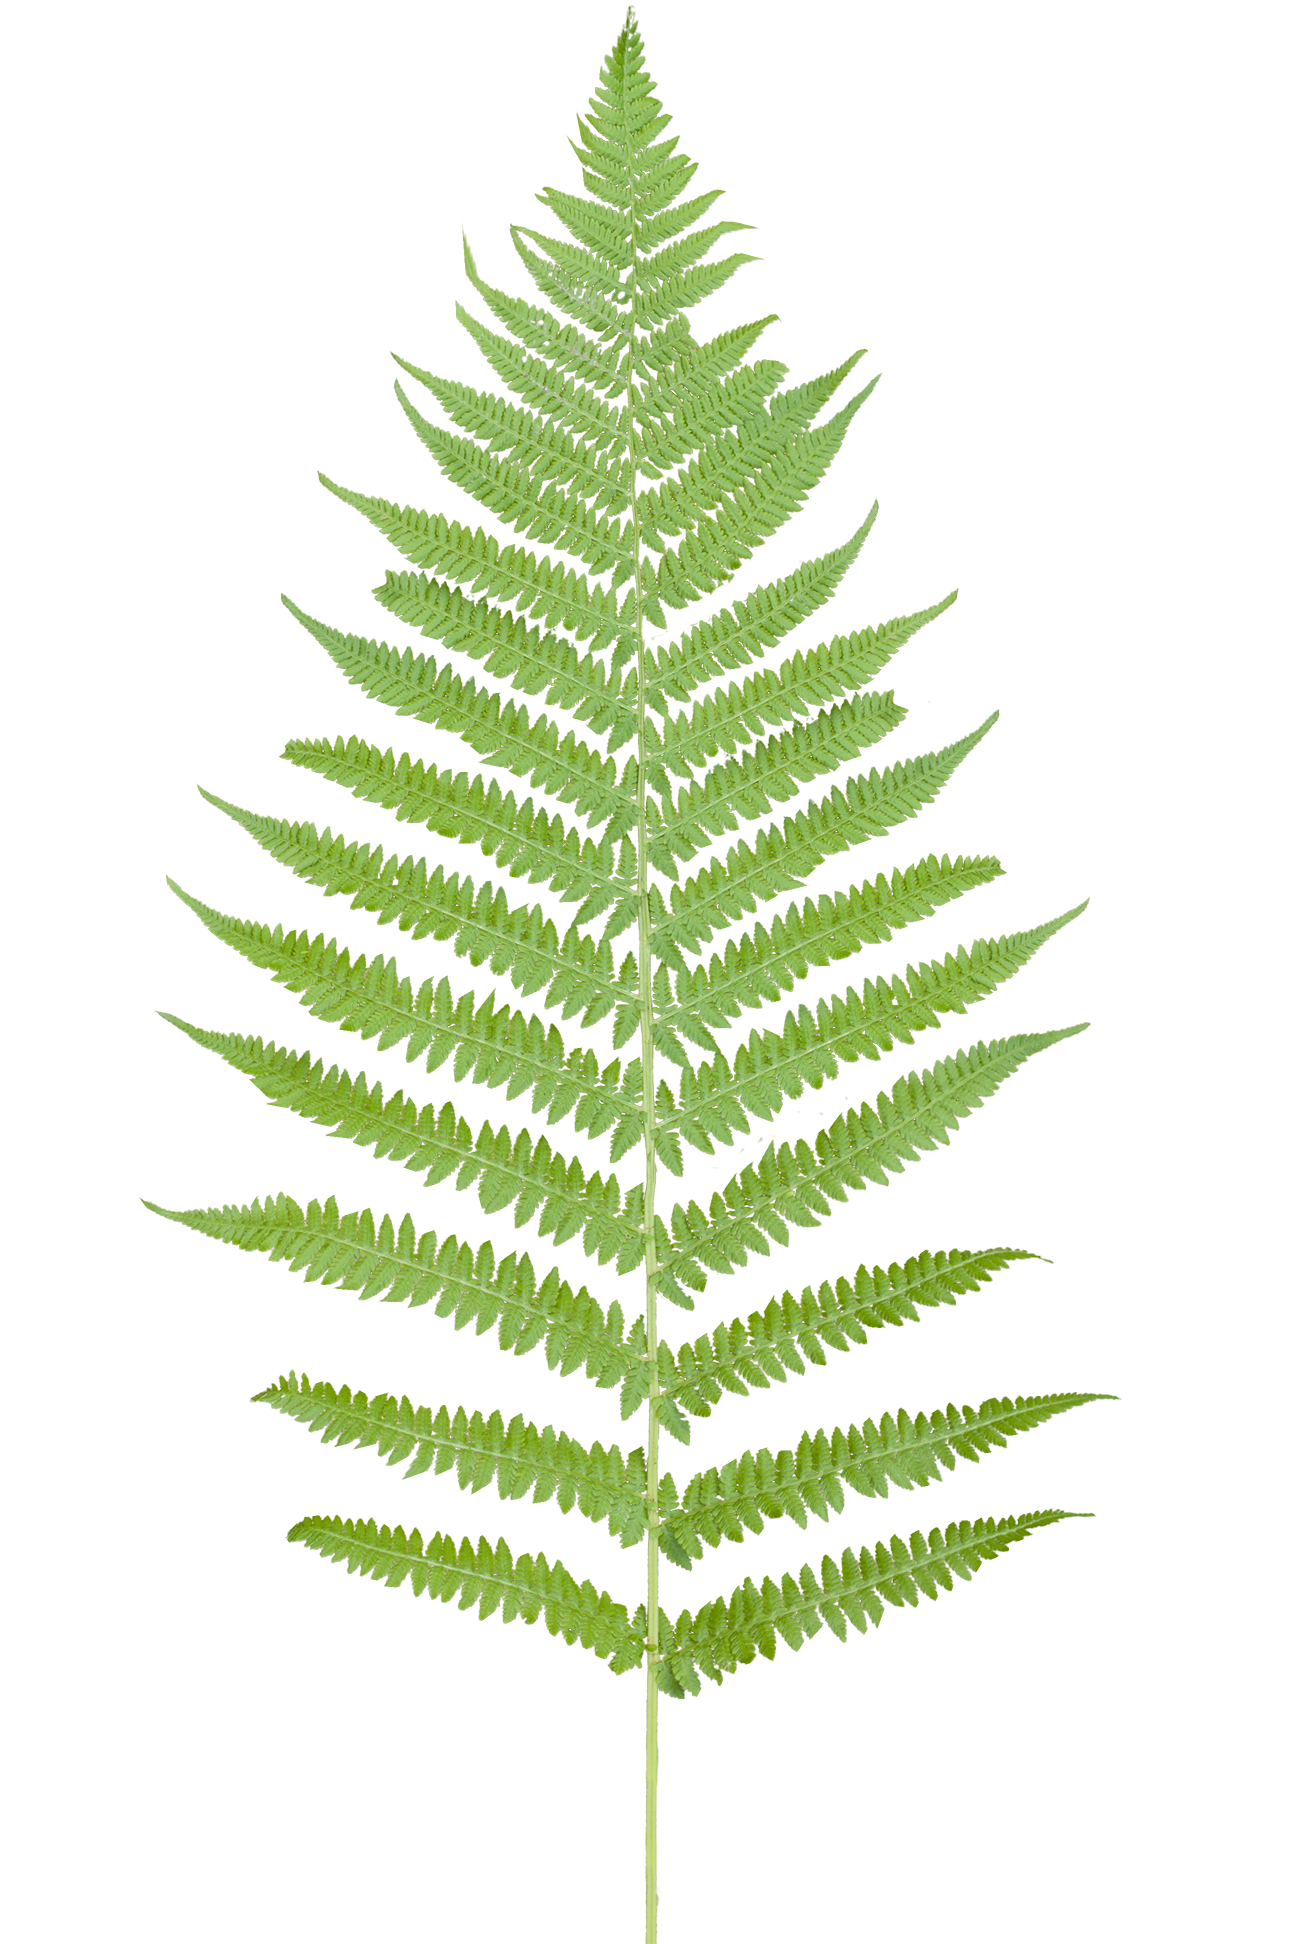 paramecij's vegetation base texture pack - vegetation_fern_08.png